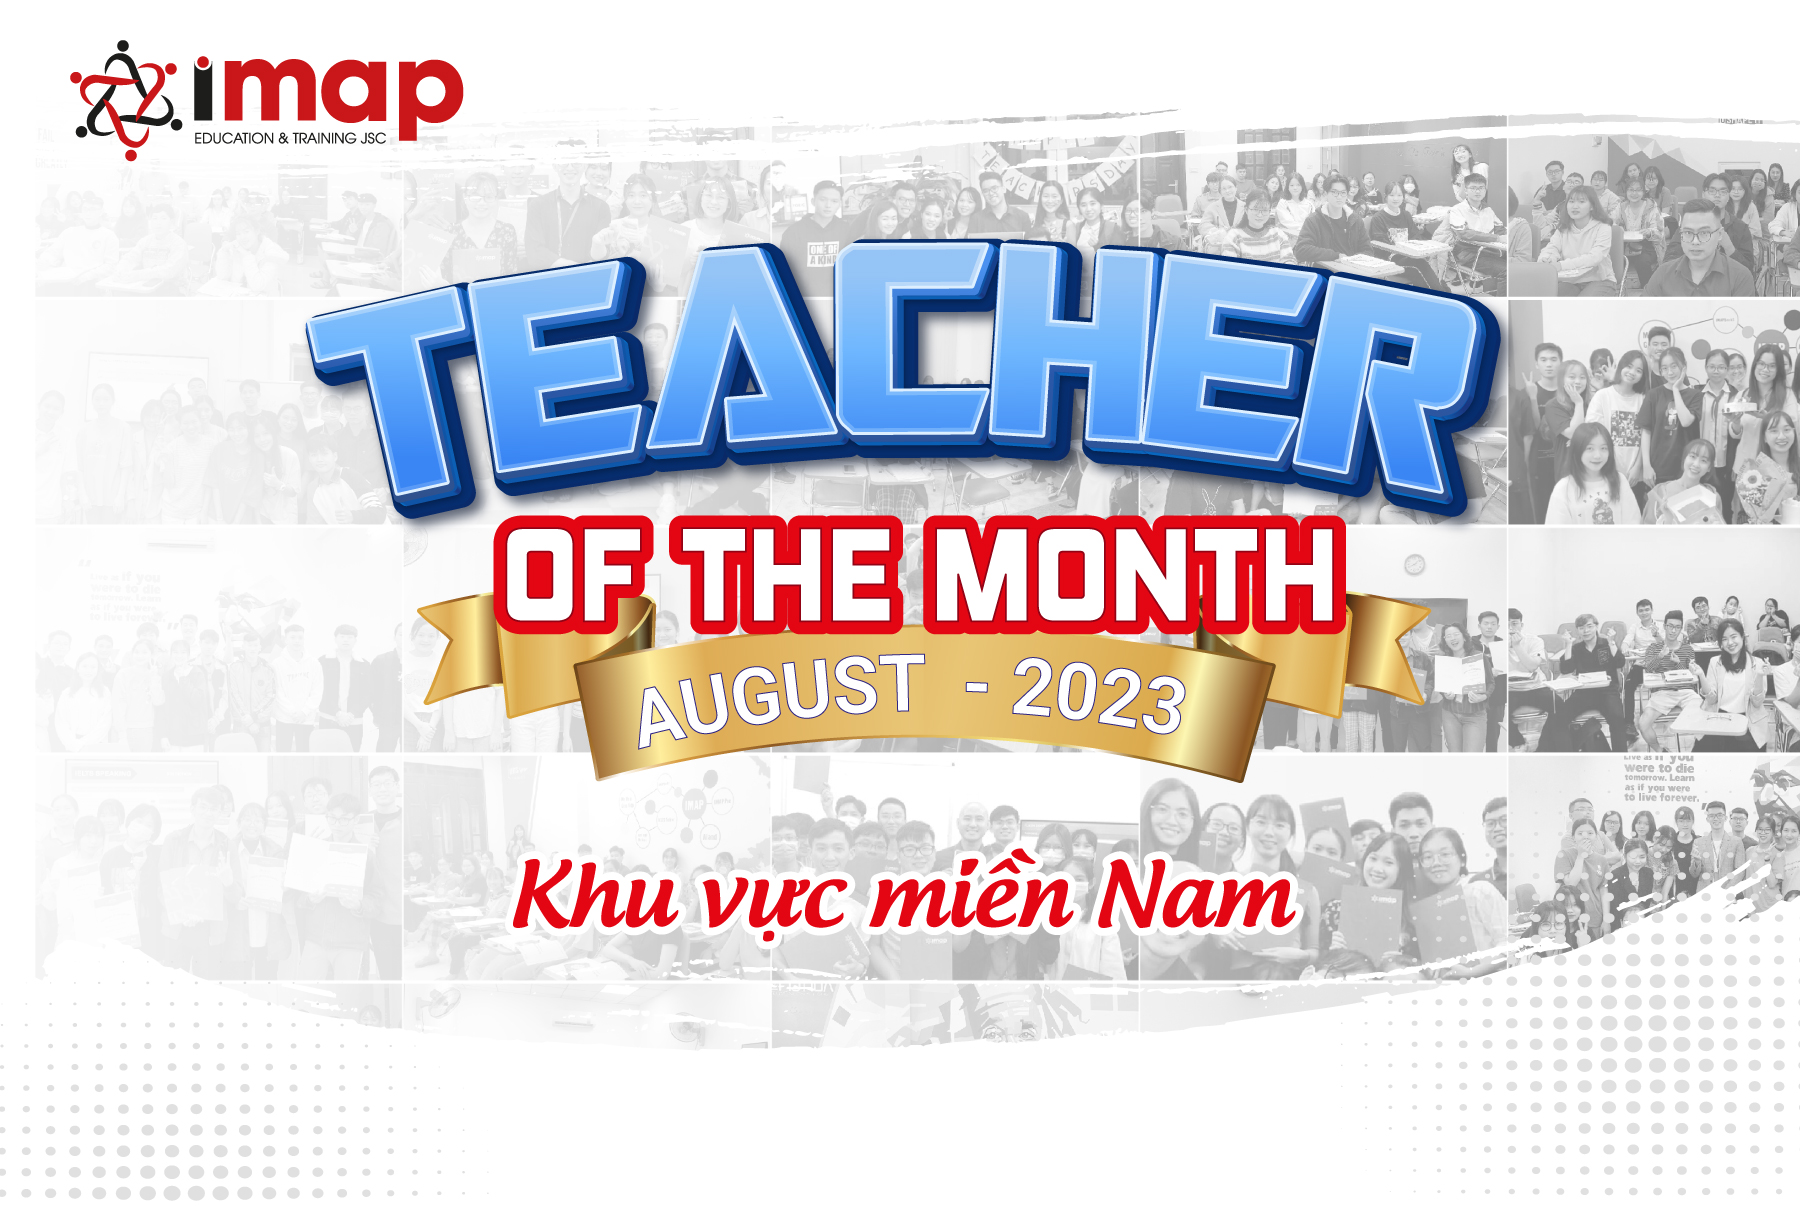 VINH DANH TEACHER OF THE MONTH THÁNG 8/2023, KHU VỰC MIỀN NAM 